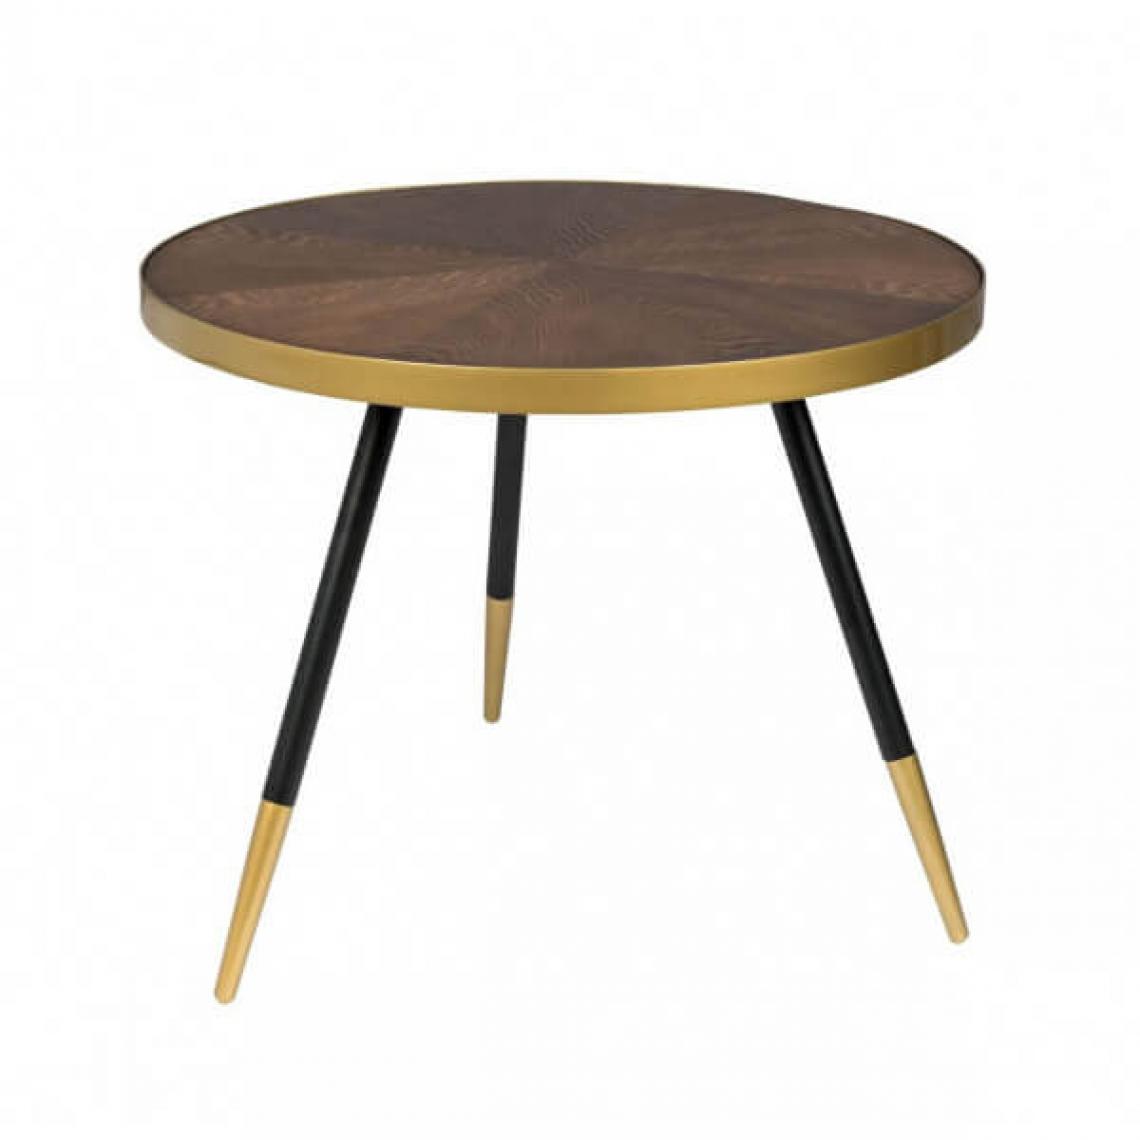 Mathi Design - DENISE L - Table basse ronde art déco - Tables basses